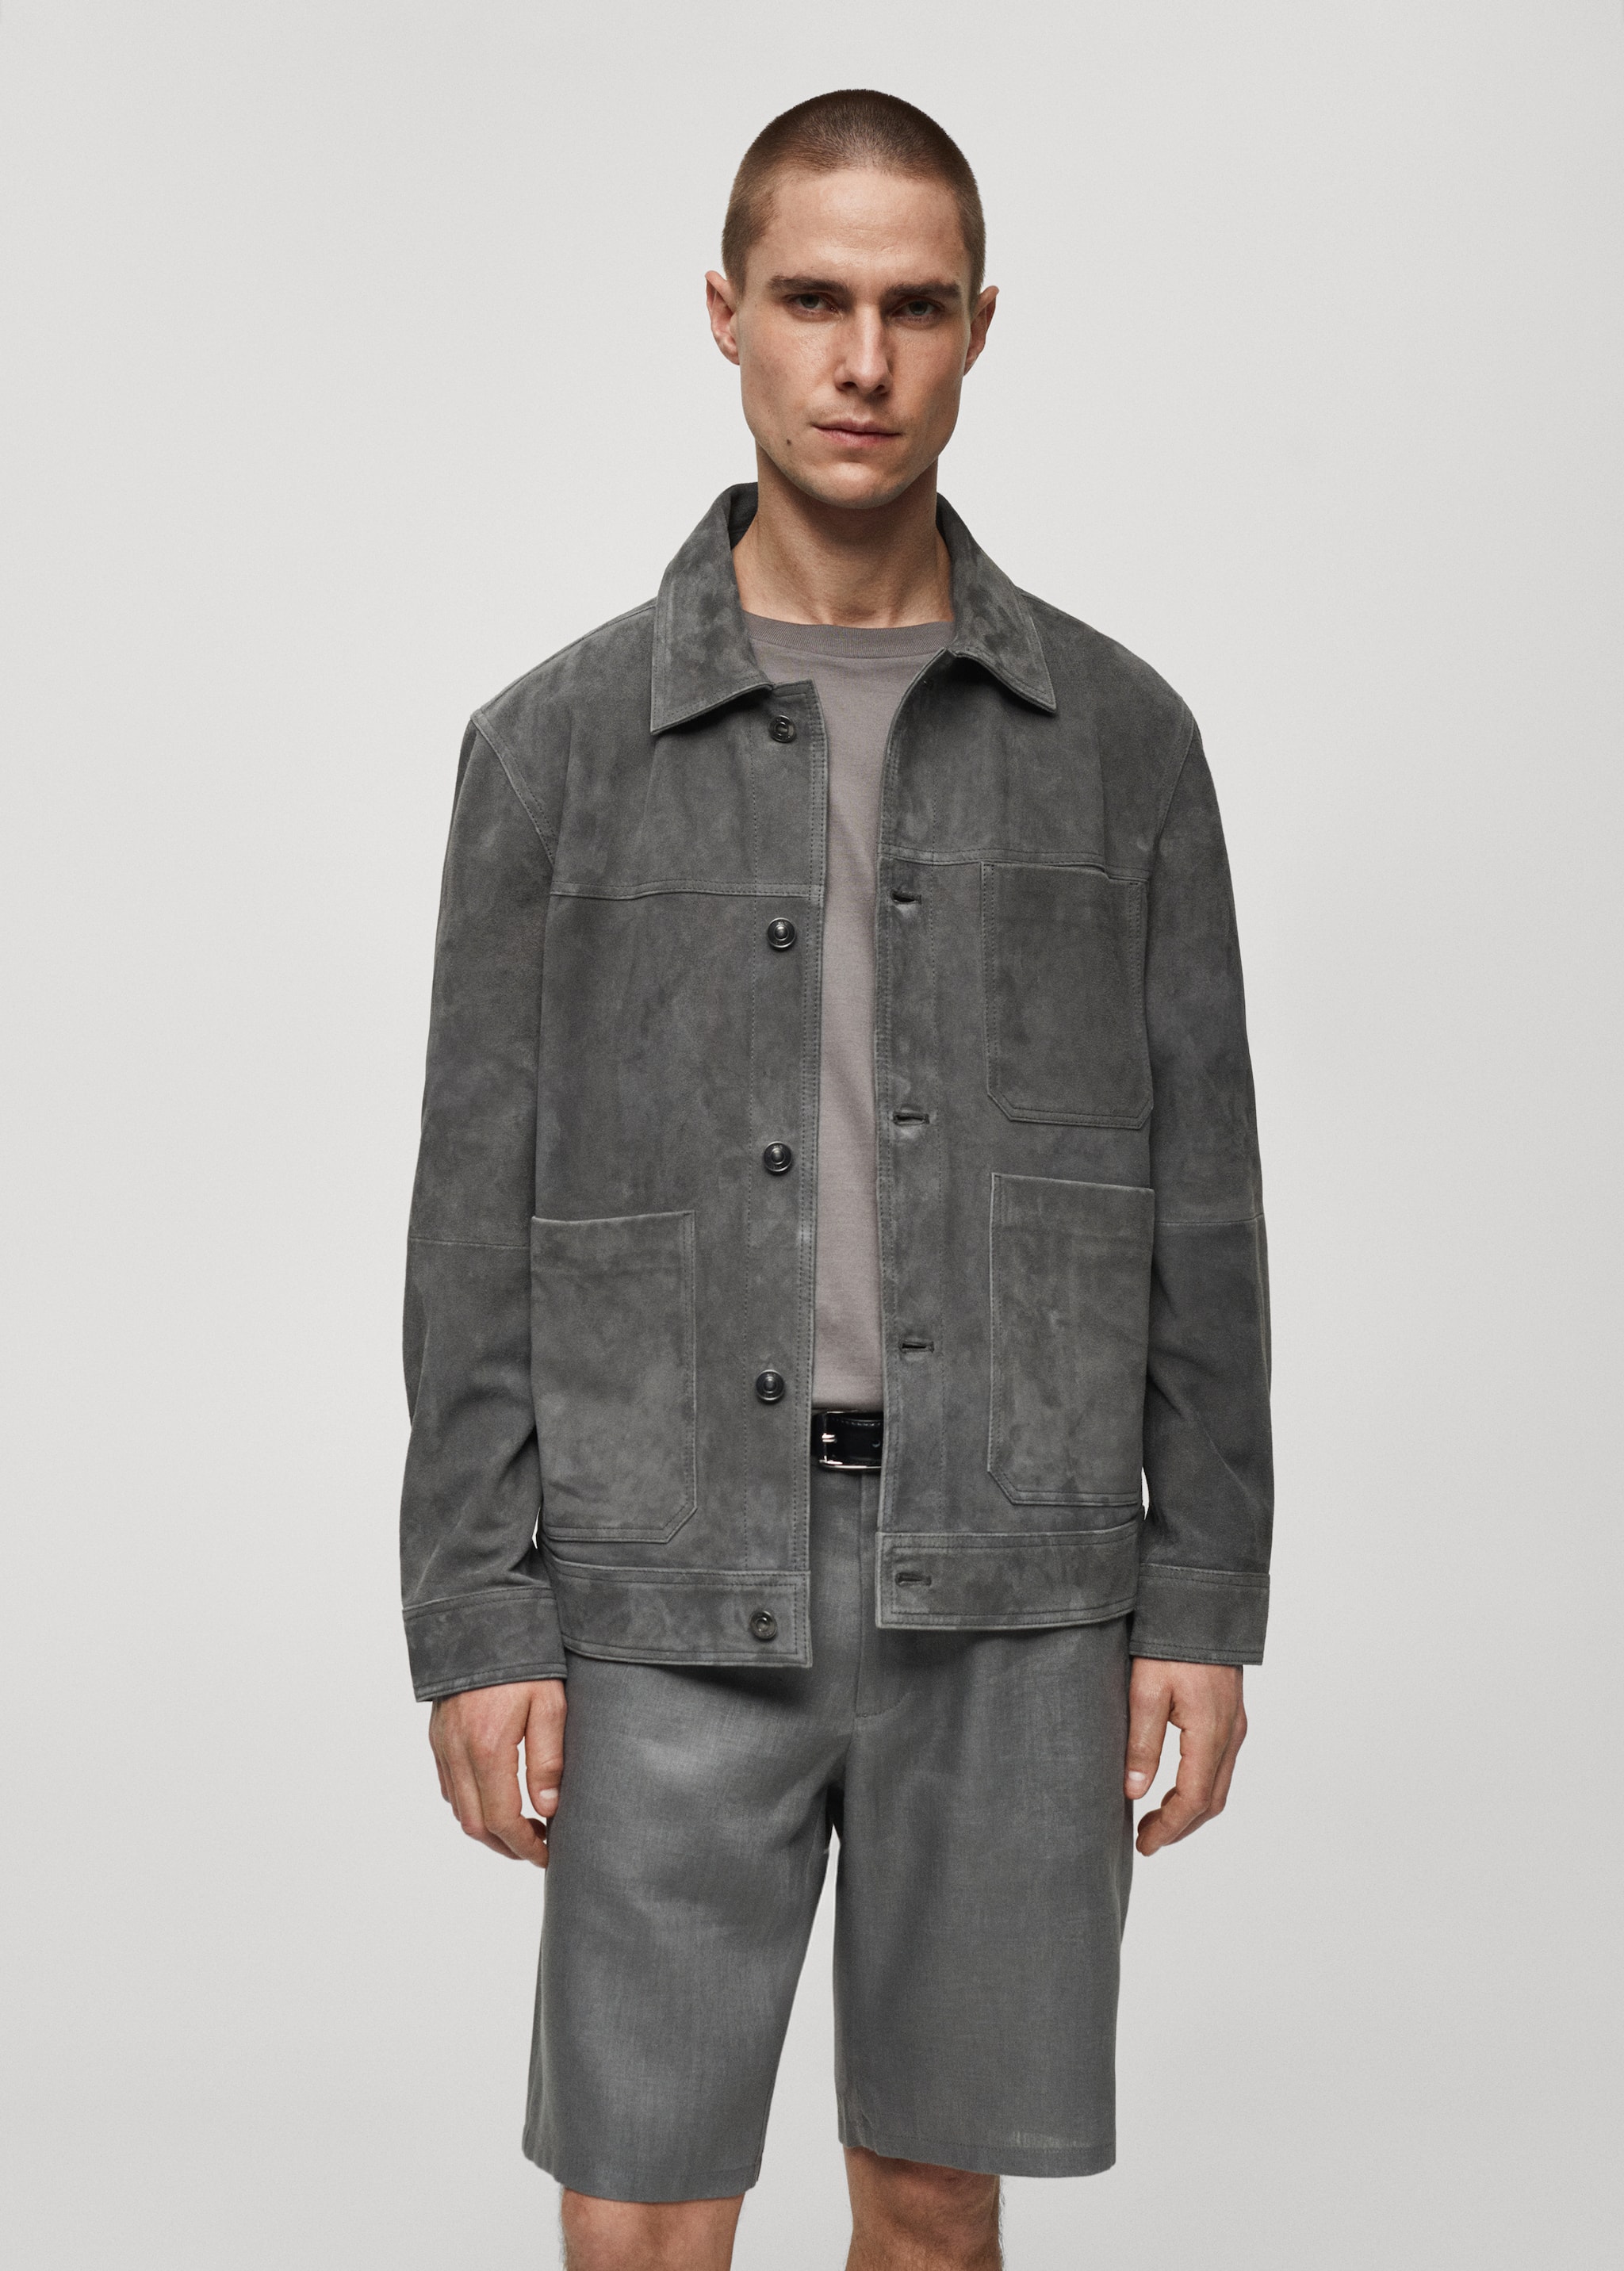 100% leather jacket with pockets - Medium plane